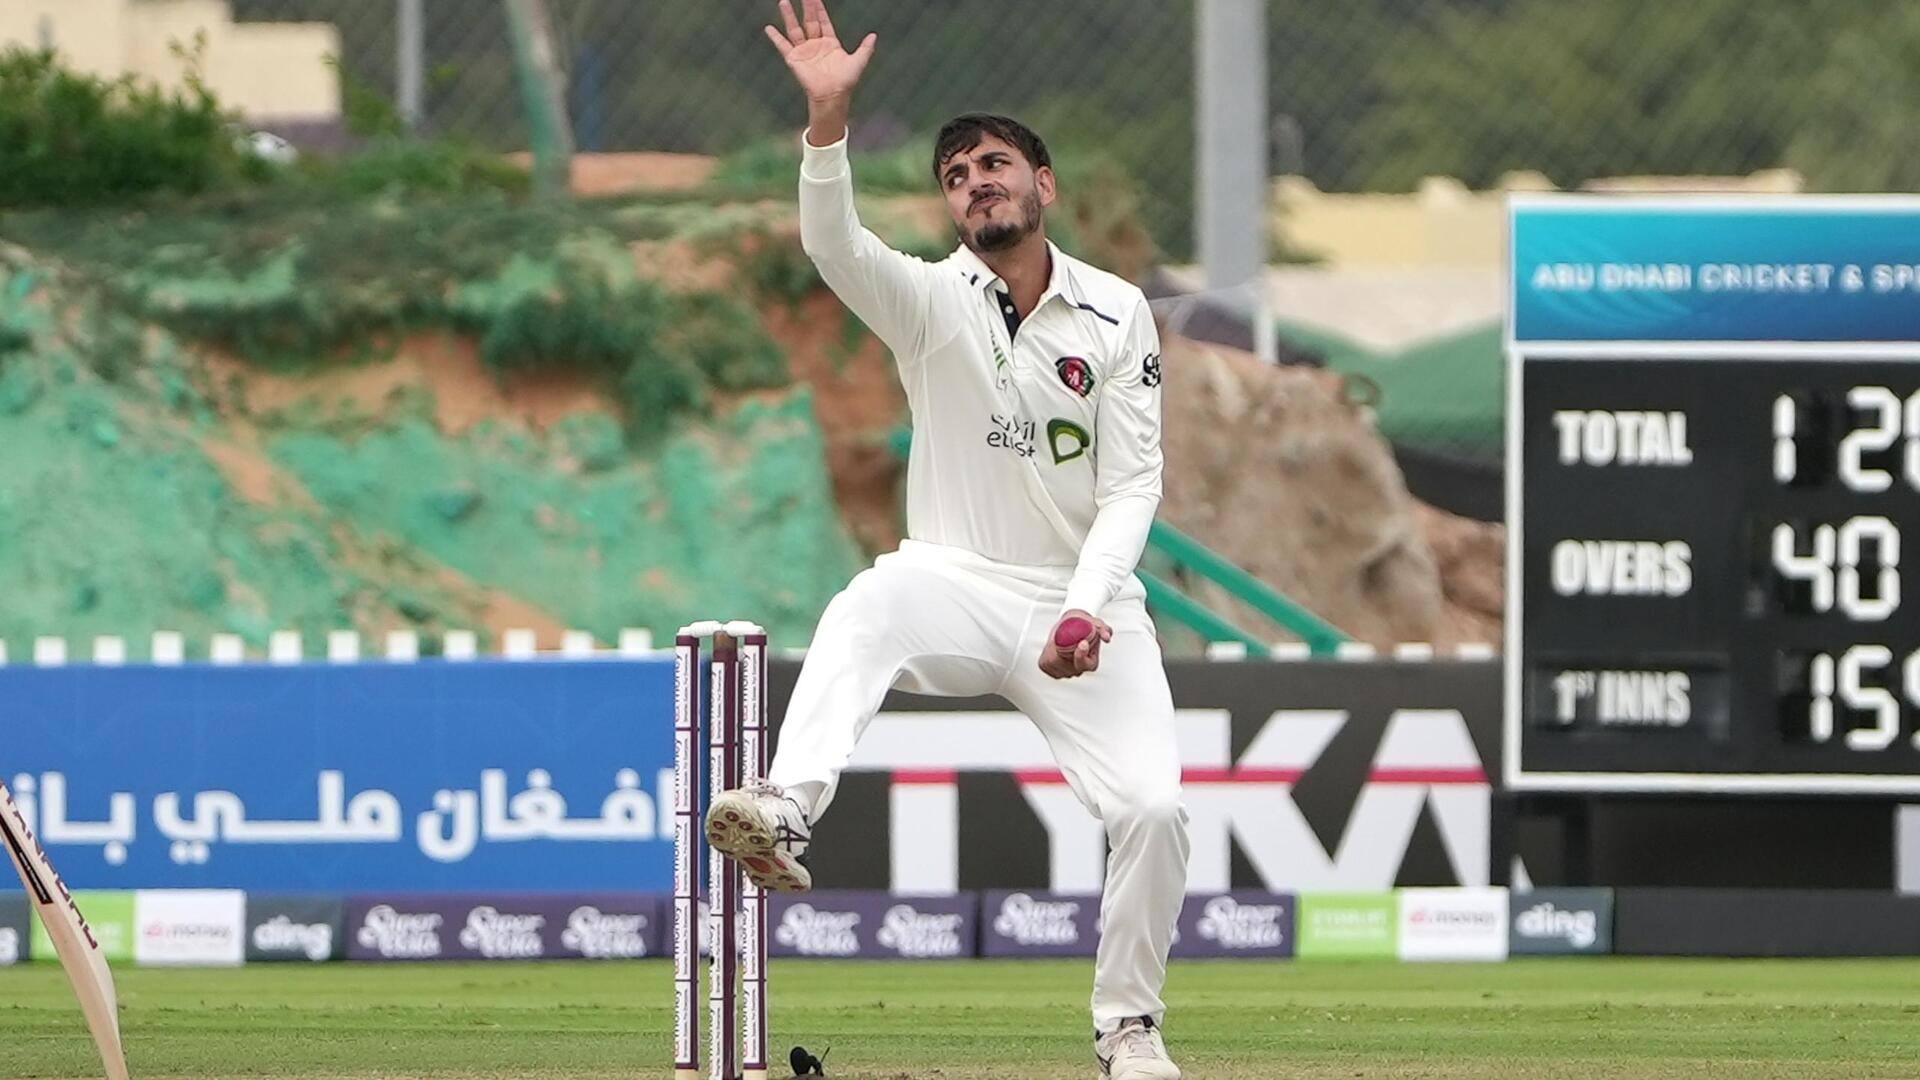 अफगानिस्तान के जिया-उर-रहमान ने आयरलैंड के खिलाफ लिए 5 विकेट, जानिए उनके आंकड़े